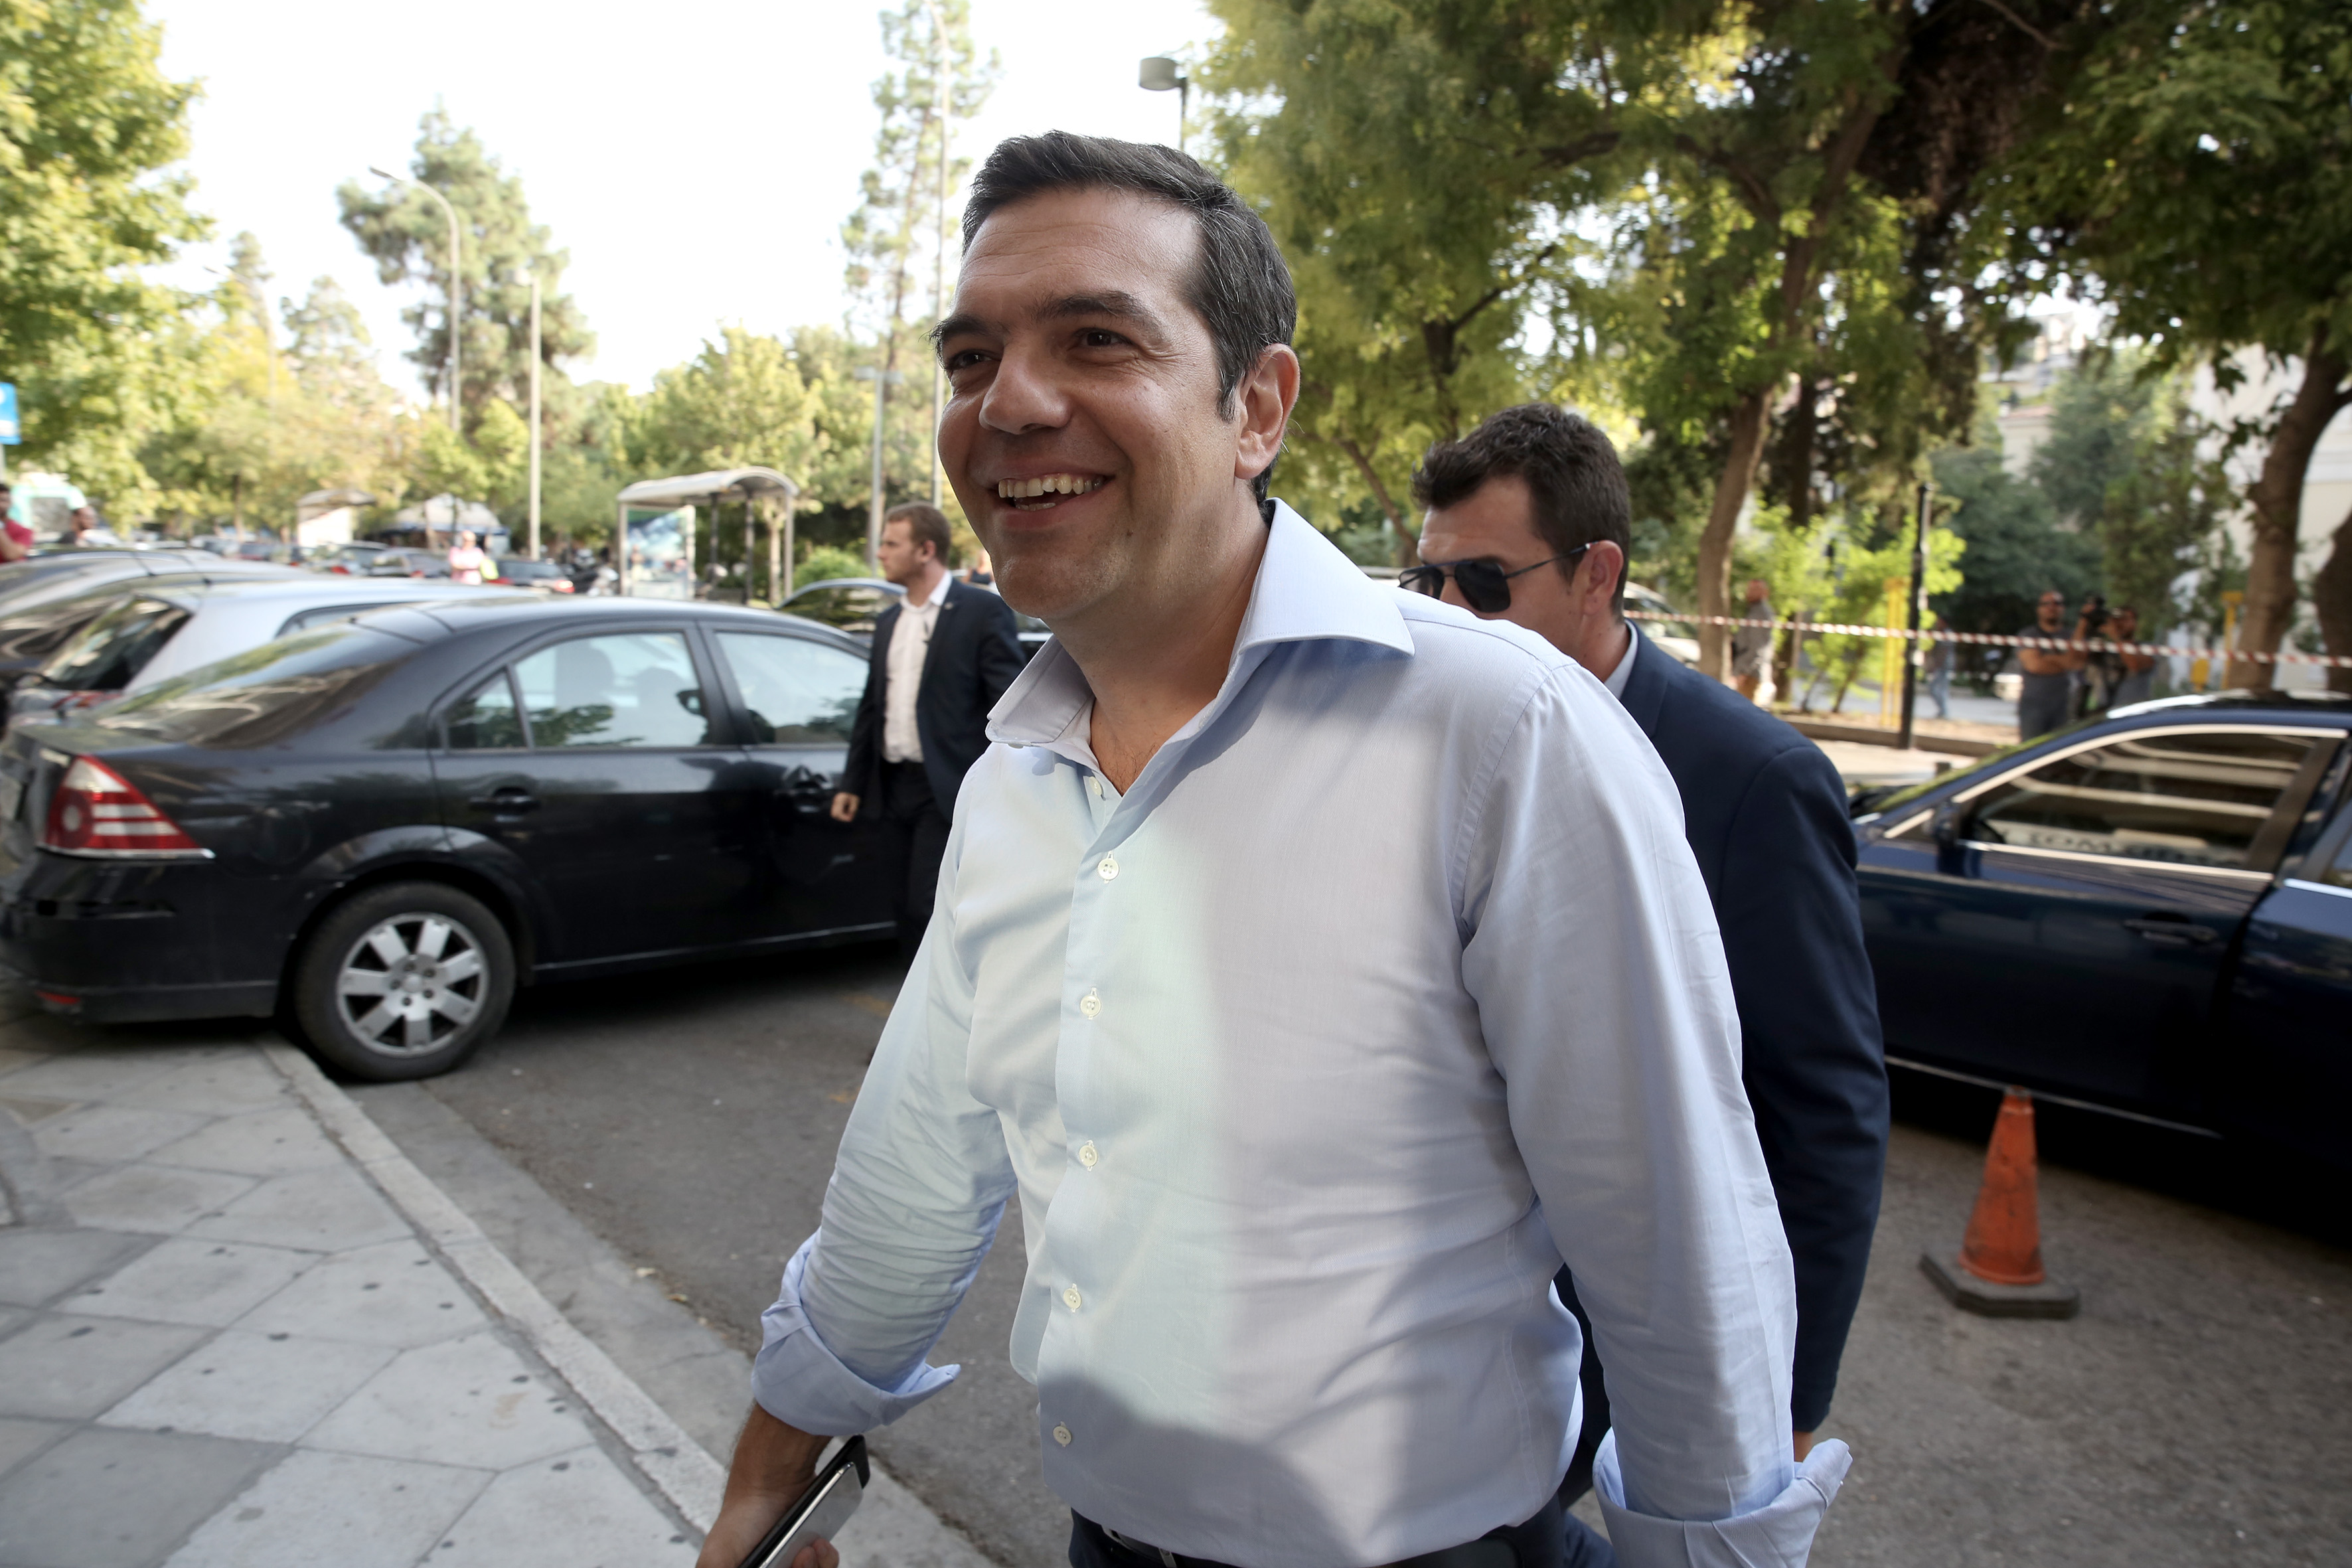 Θεσσαλονίκη: Με την επιγραφή «ανεπιθύμητος» υποδέχονται τον Πρωθυπουργό  [Εικόνες]